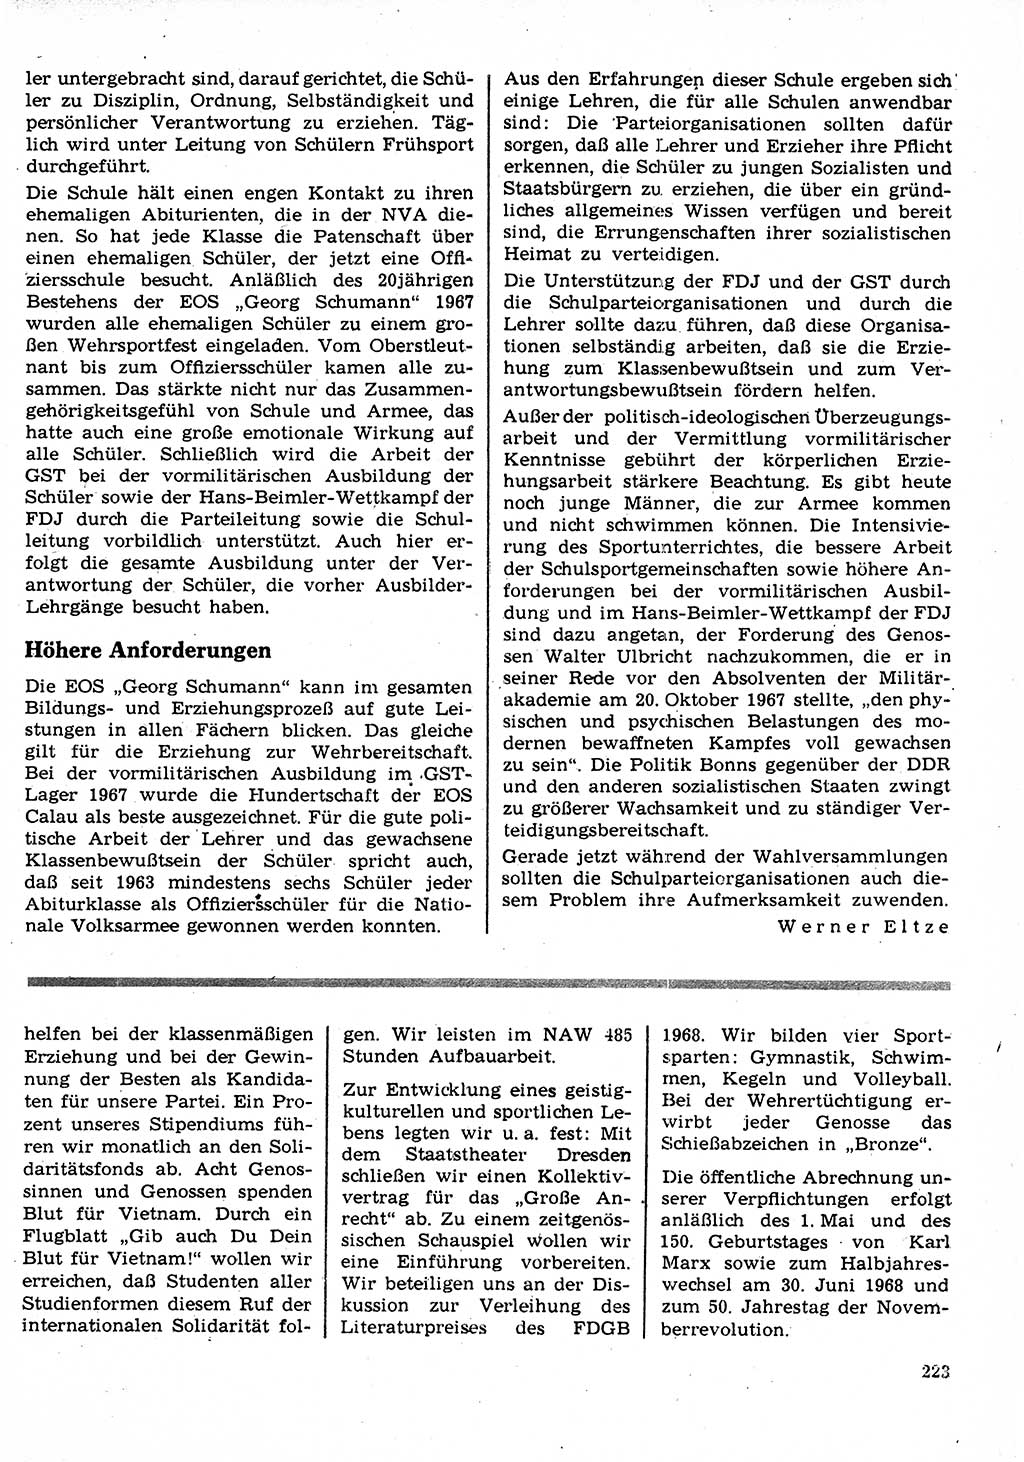 Neuer Weg (NW), Organ des Zentralkomitees (ZK) der SED (Sozialistische Einheitspartei Deutschlands) für Fragen des Parteilebens, 23. Jahrgang [Deutsche Demokratische Republik (DDR)] 1968, Seite 223 (NW ZK SED DDR 1968, S. 223)